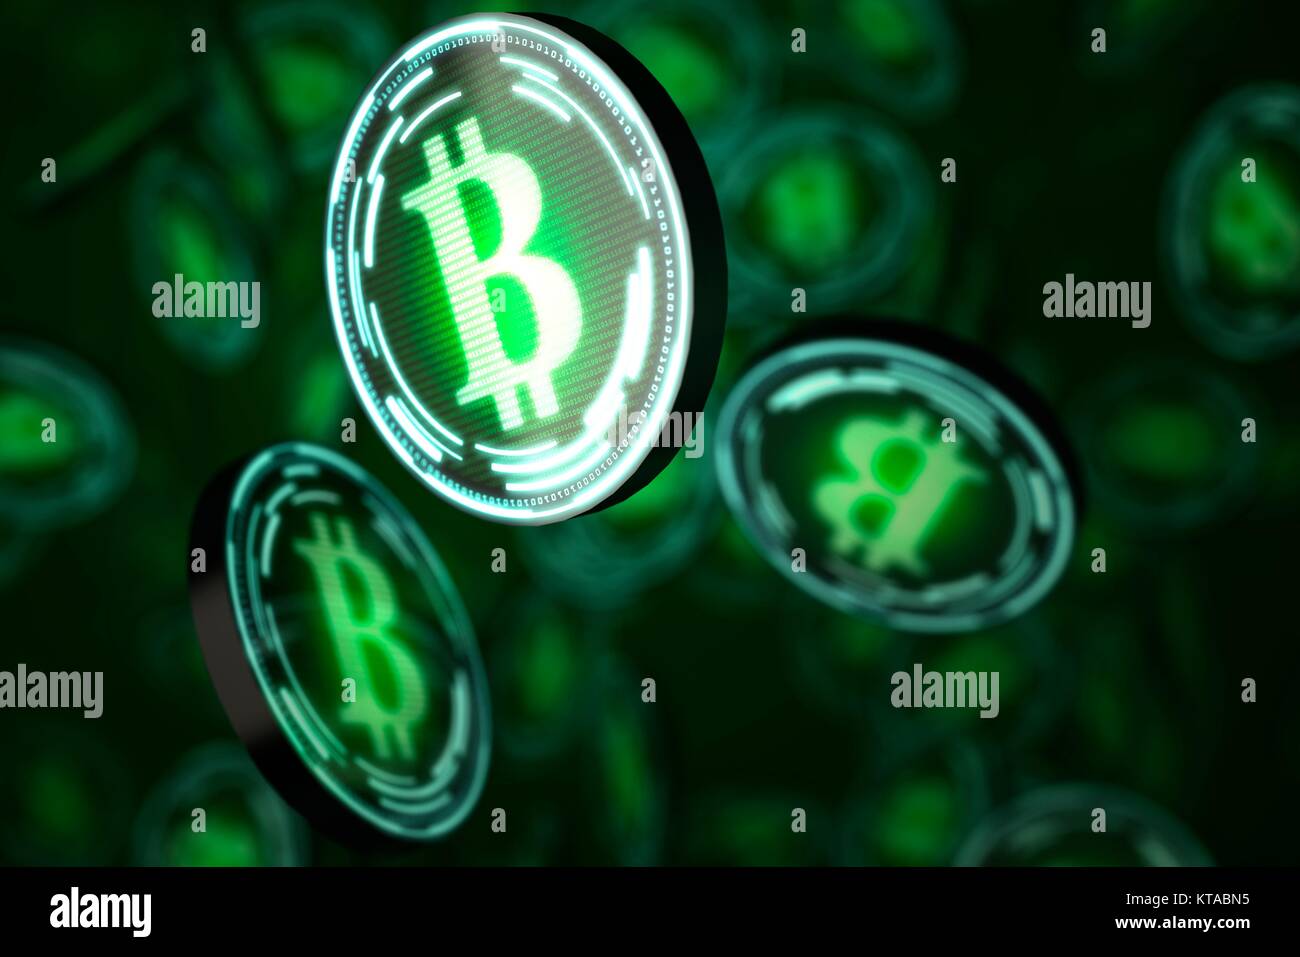 Konzeptionelle Kunstwerke, die die bitcoin cryptocurrency. Bitcoin ist eine Art von digitalen Währung, im Jahr 2009 gegründet, die unabhängig von jeder Bank tätig ist. Bestimmte Anbieter jetzt Bitcoins akzeptieren zur Bezahlung von Waren oder Dienstleistungen. Stockfoto